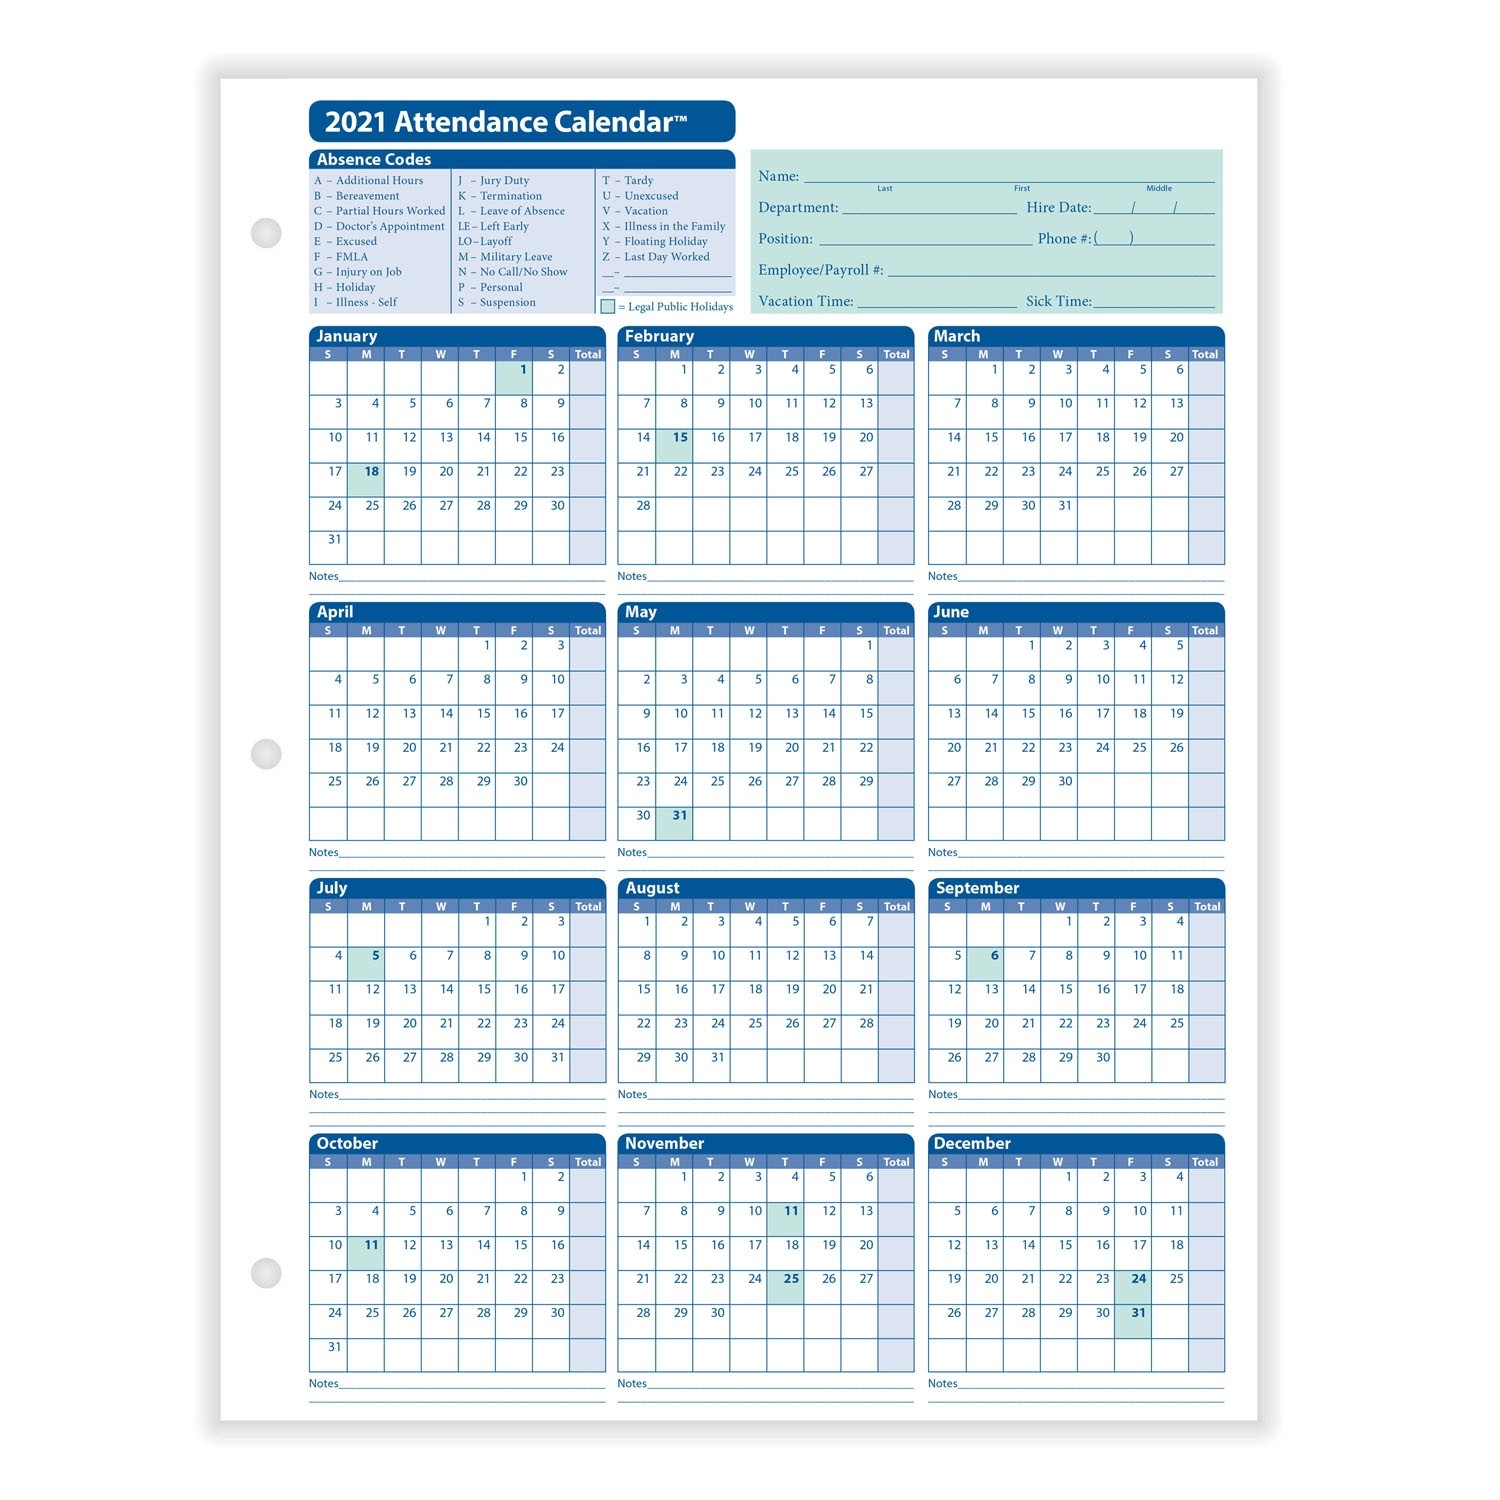 Employee Attendance Calendar-Free Printable 2021 Attendance Calendar